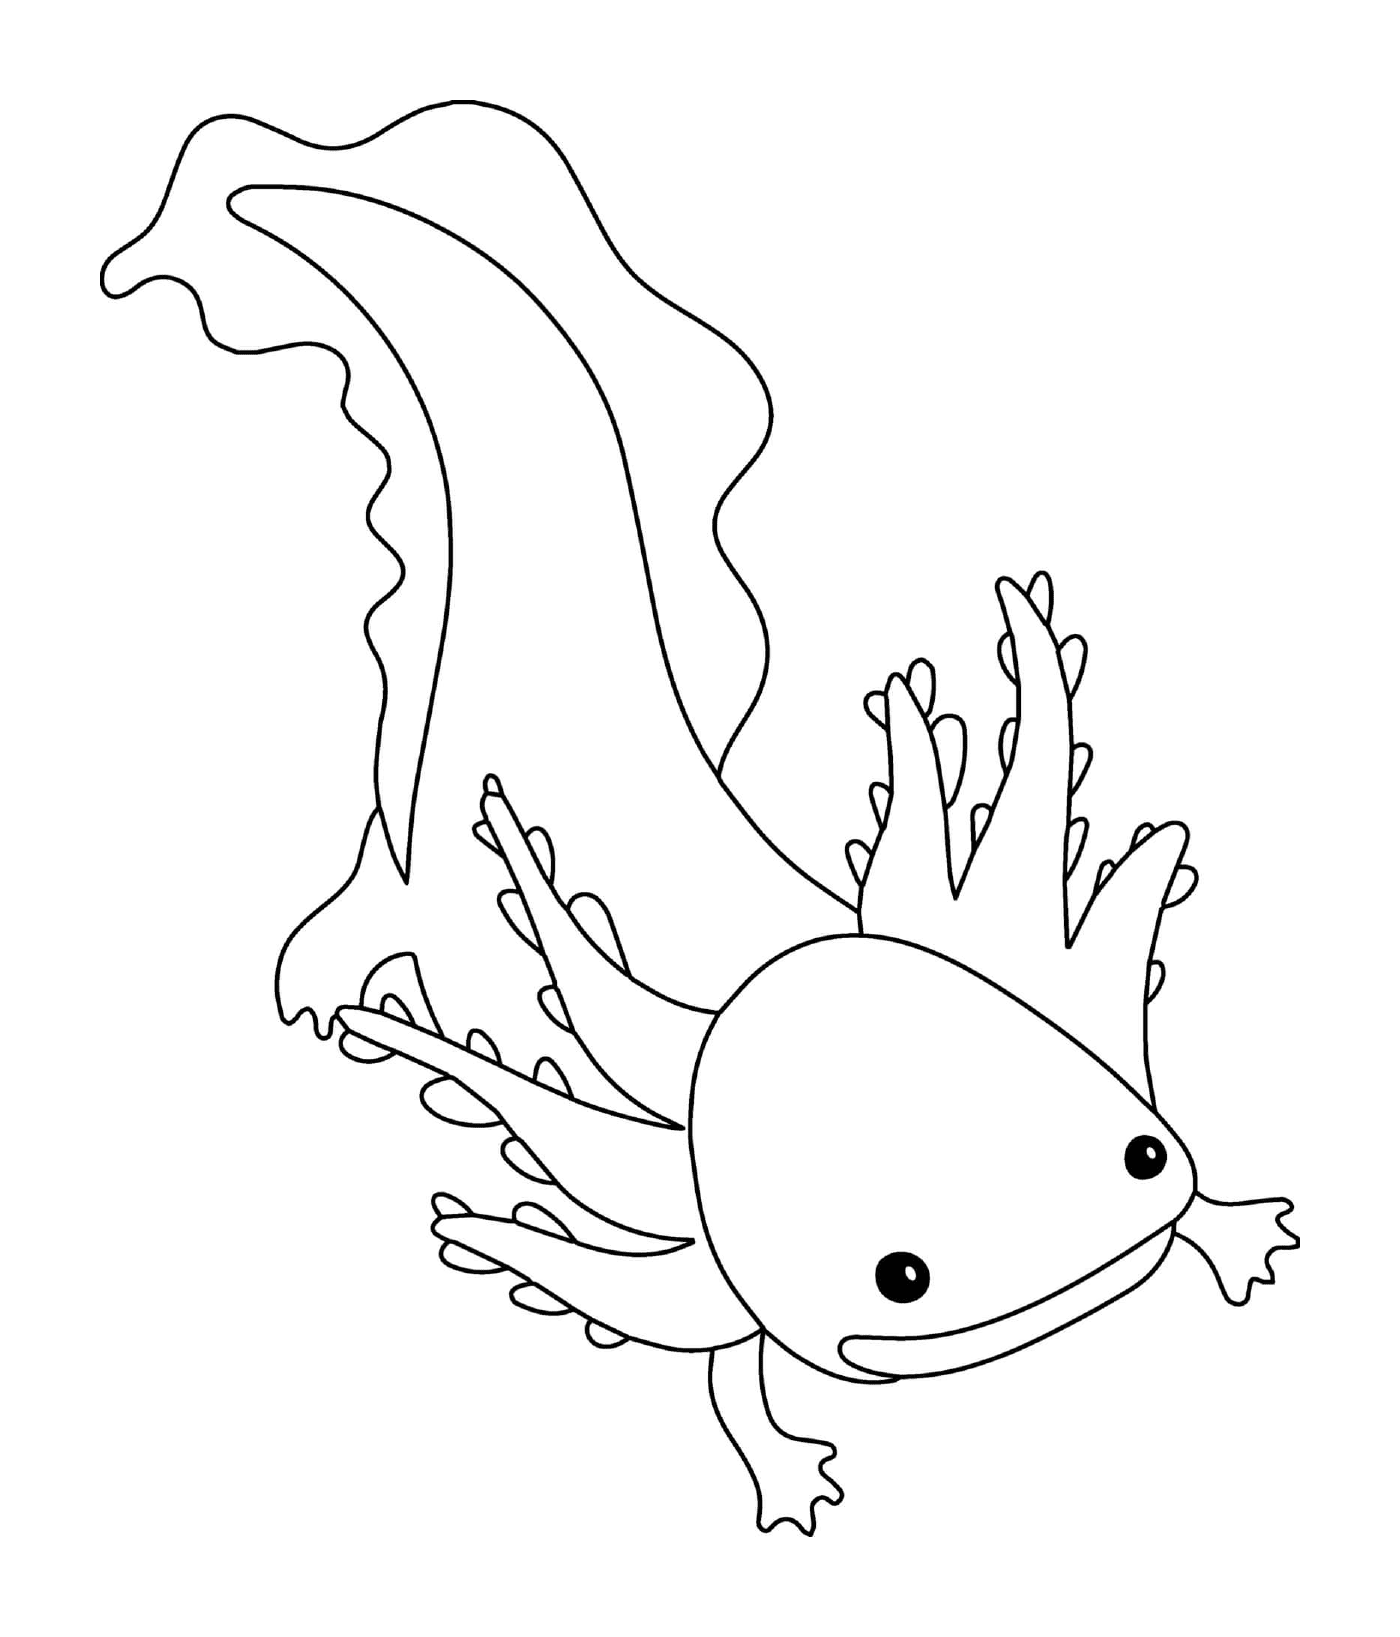   Axolotl ne se métamorphosant jamais 